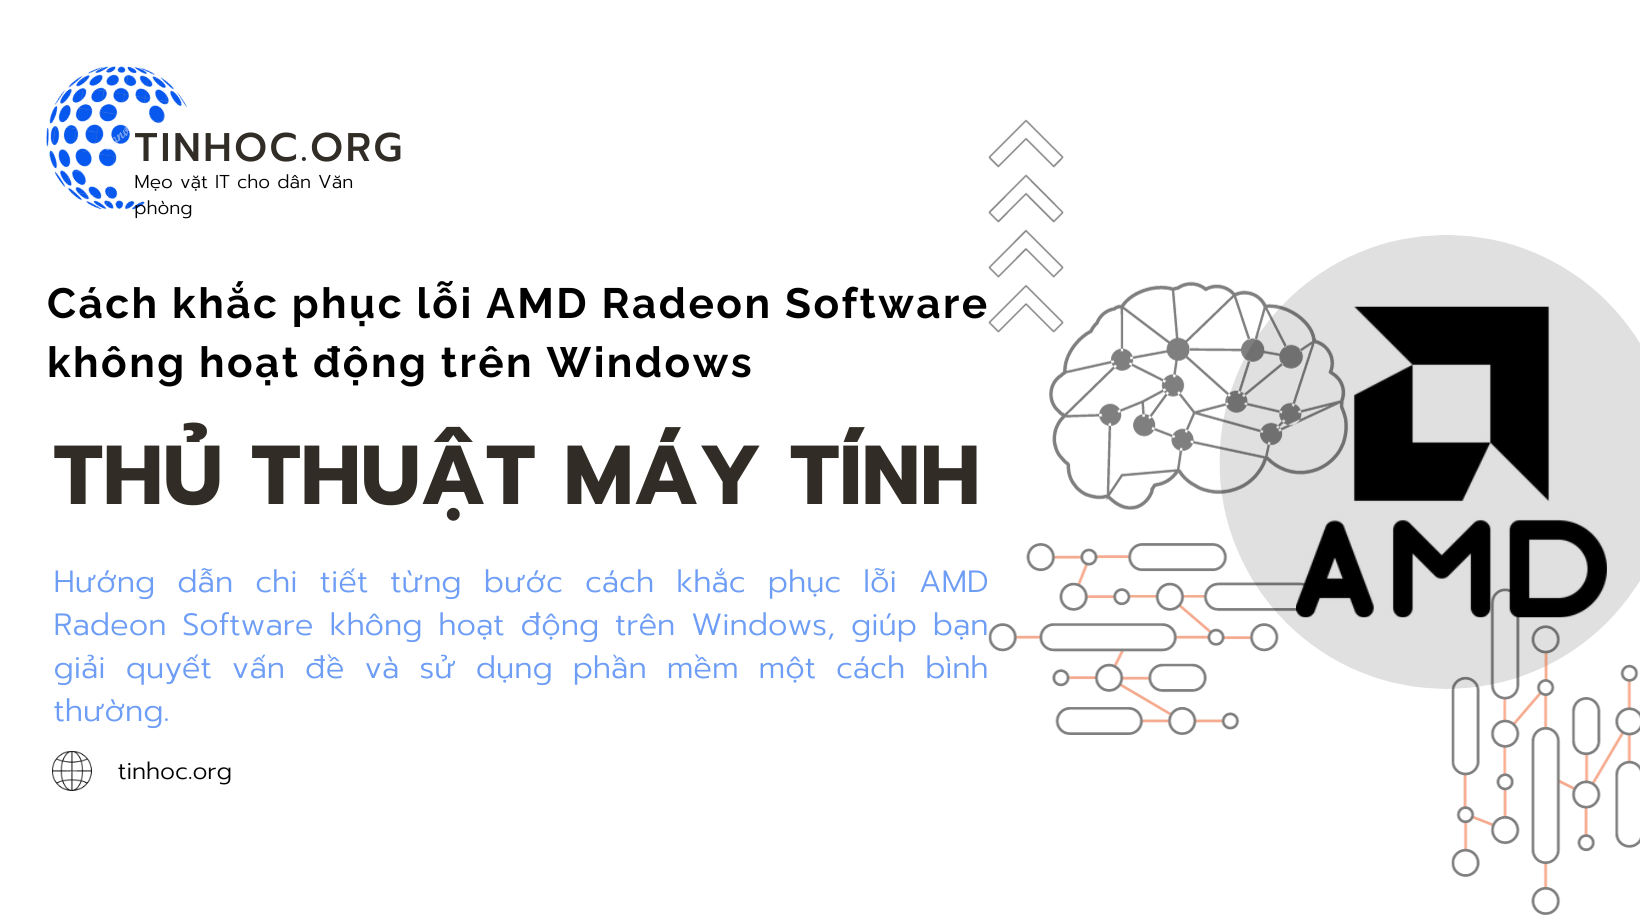 Cách khắc phục lỗi AMD Radeon Software trên Windows